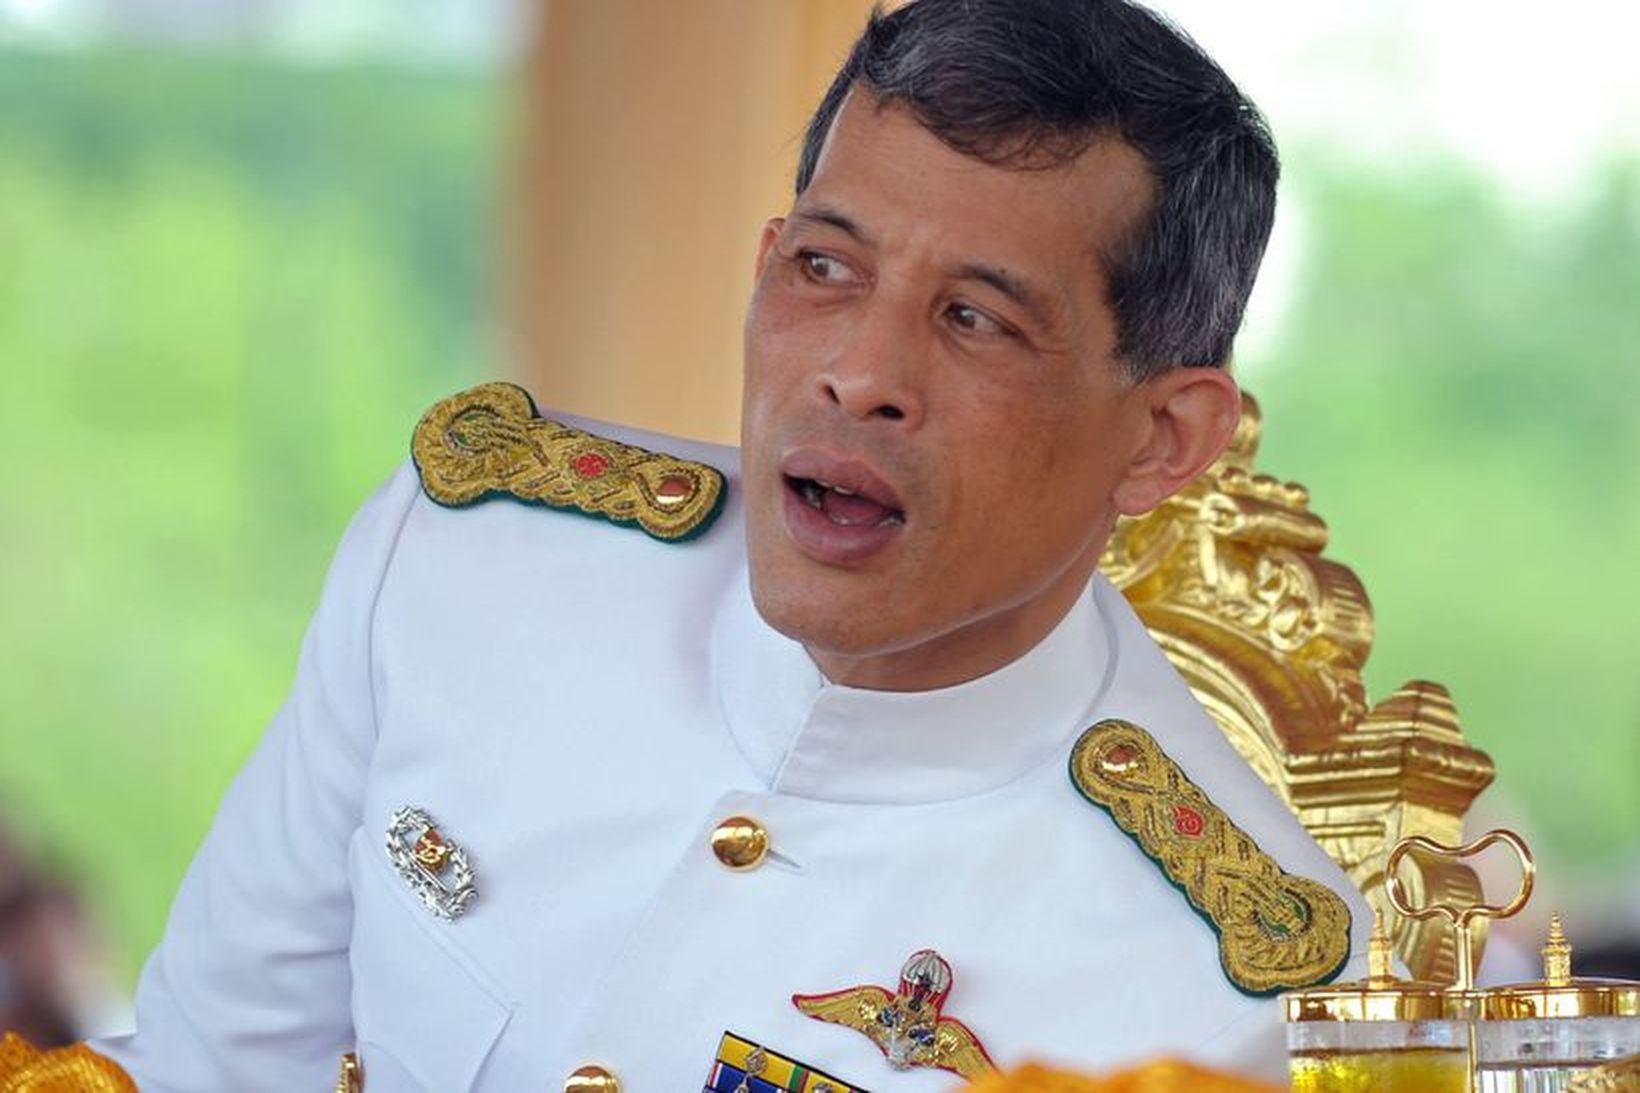 Krónprins Taílands Maha Vajiralongkorn.